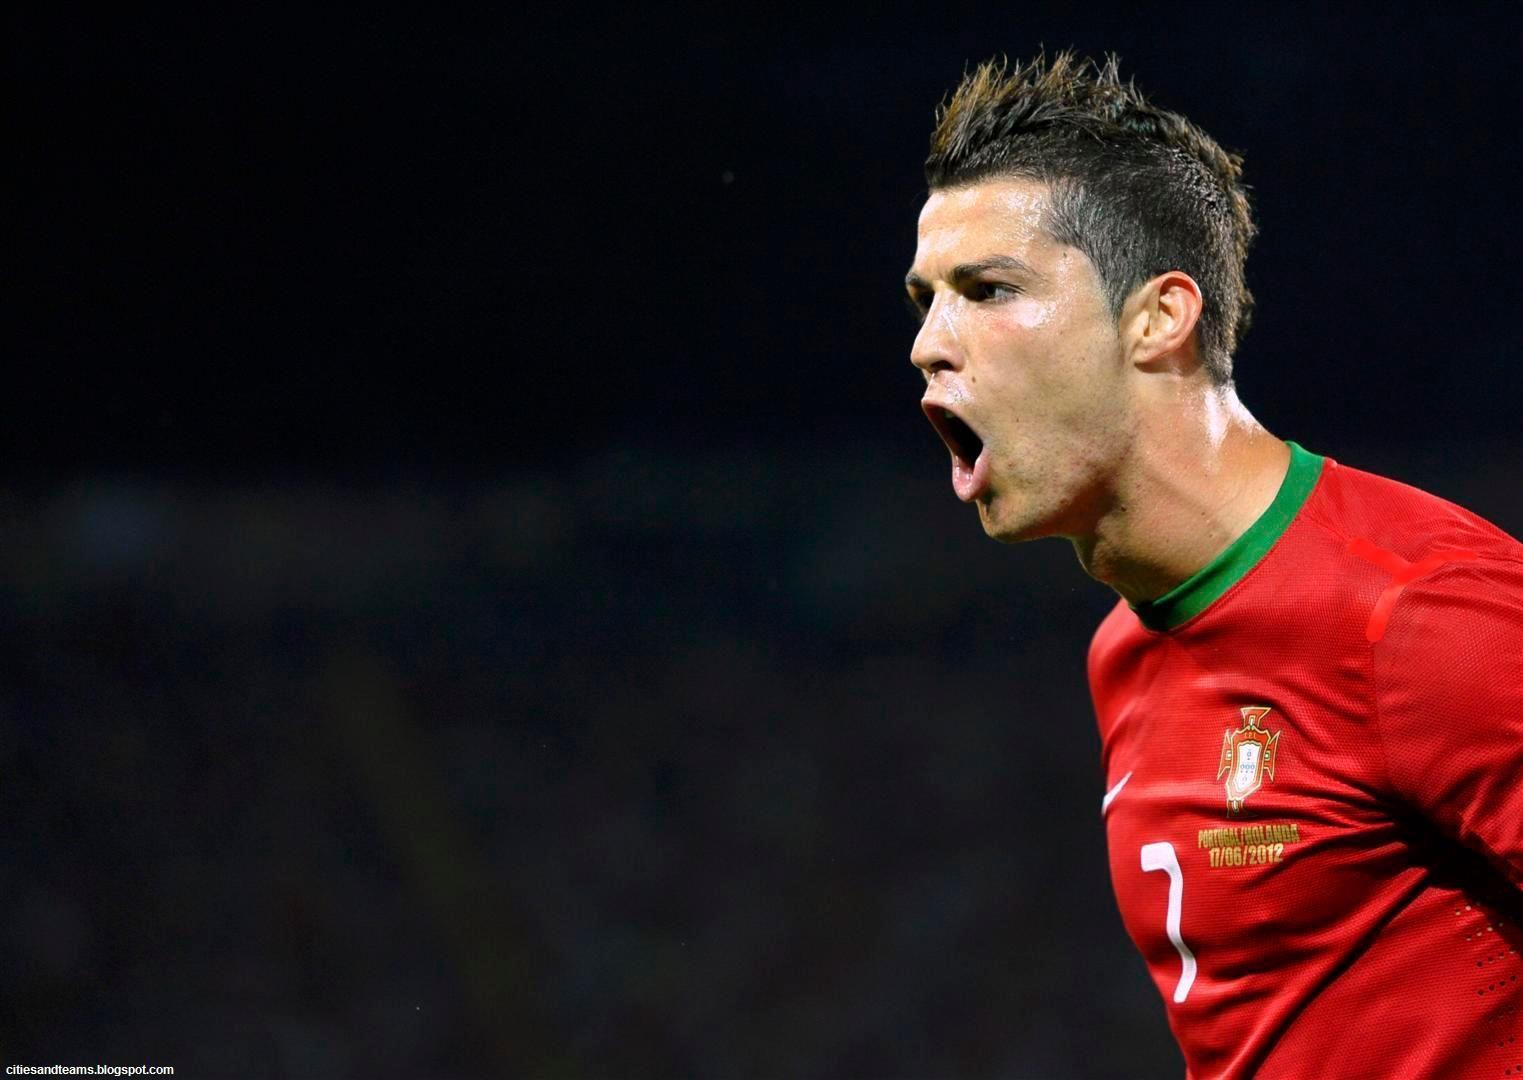 Cristiano Ronaldo. Cristiano Ronaldo In Red T Shirt Image. Soccer